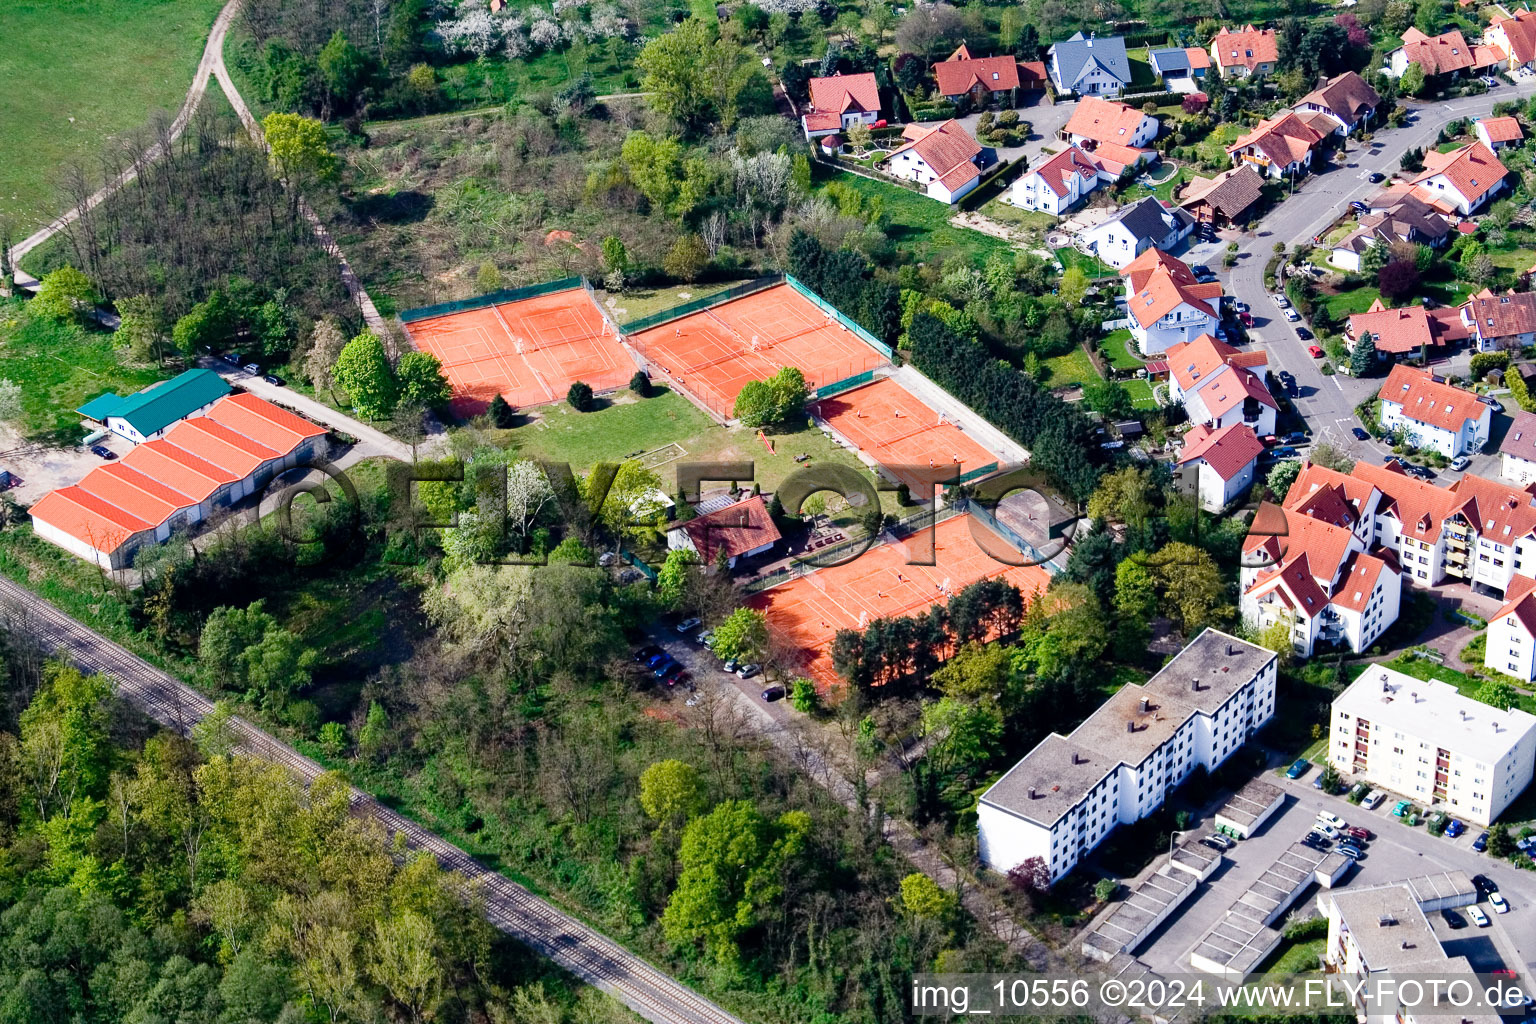 Tennisclub in Jockgrim im Bundesland Rheinland-Pfalz, Deutschland aus der Luft betrachtet